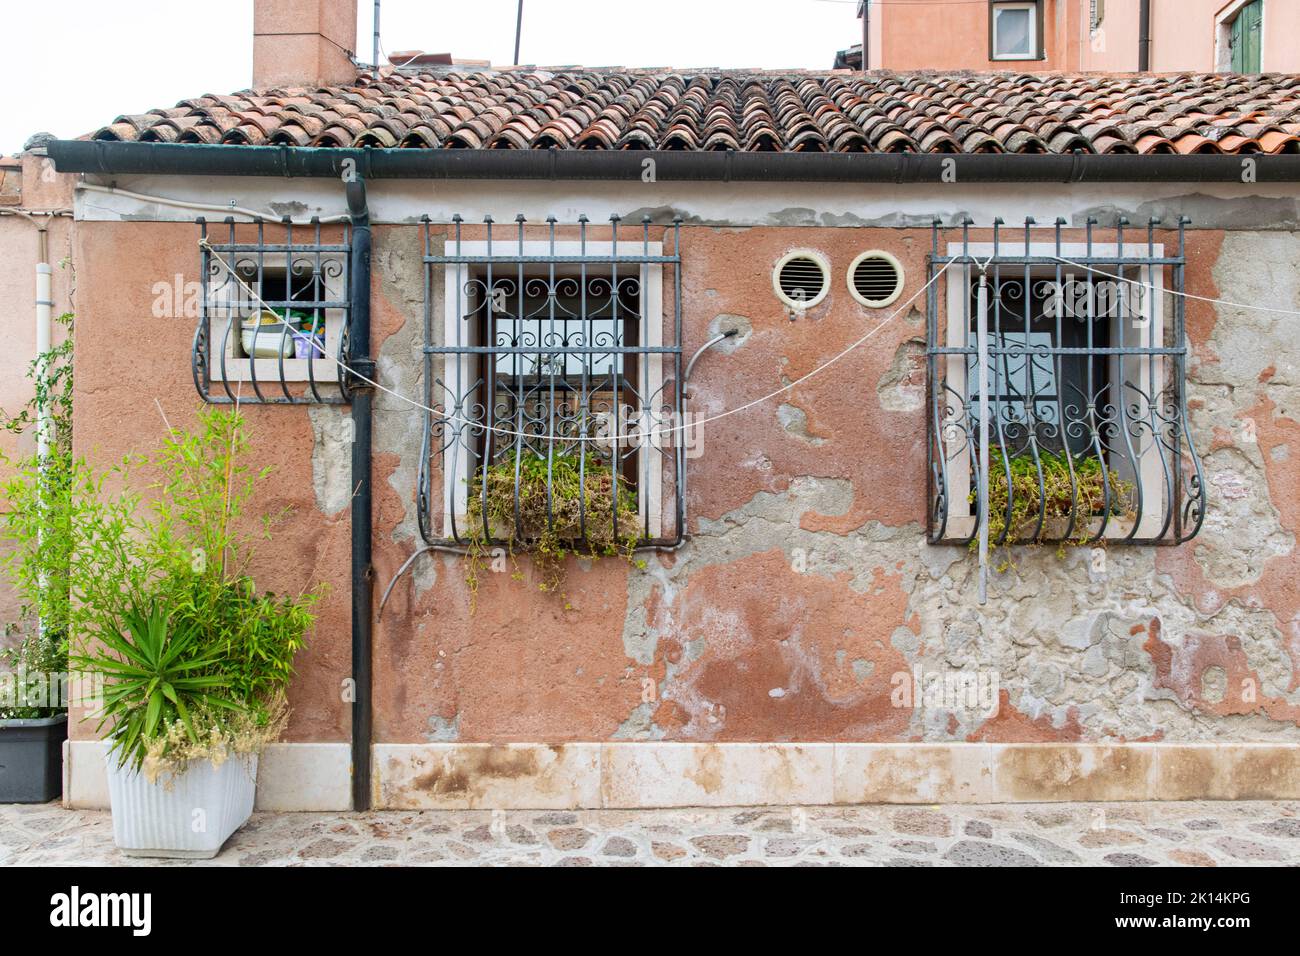 an old and rusty facade at Giudecca Island, Venice Stock Photo